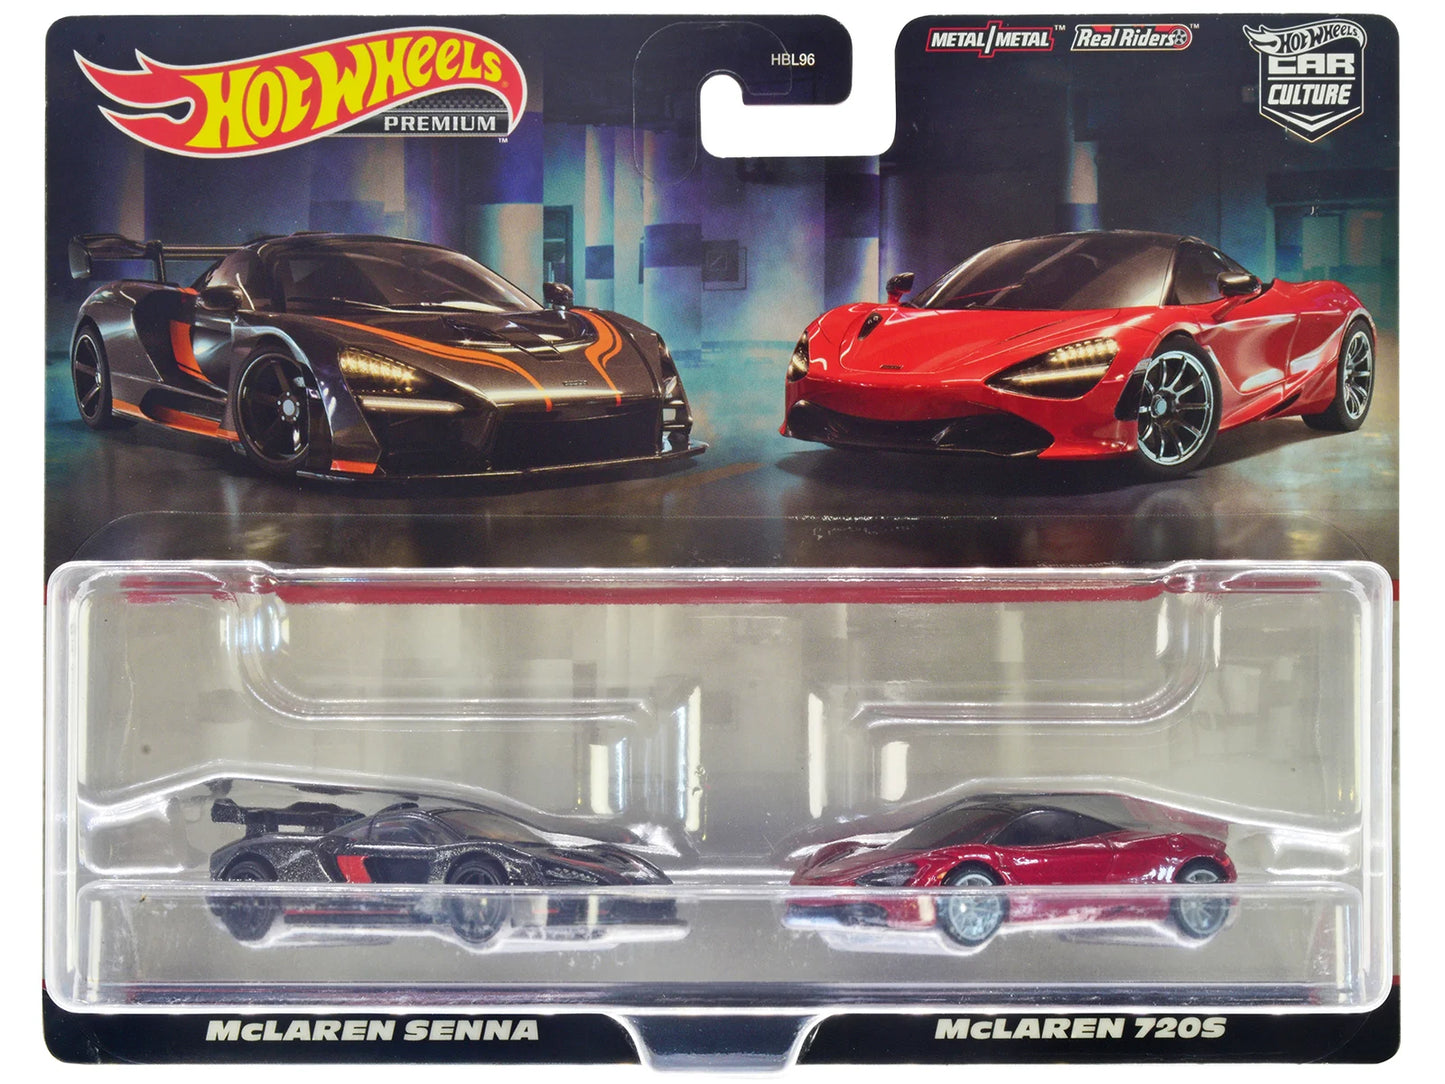 Hot Wheels Premium Car Culture McLaren Senna & McLaren 720S (Twin Pack) - Japanese Stock